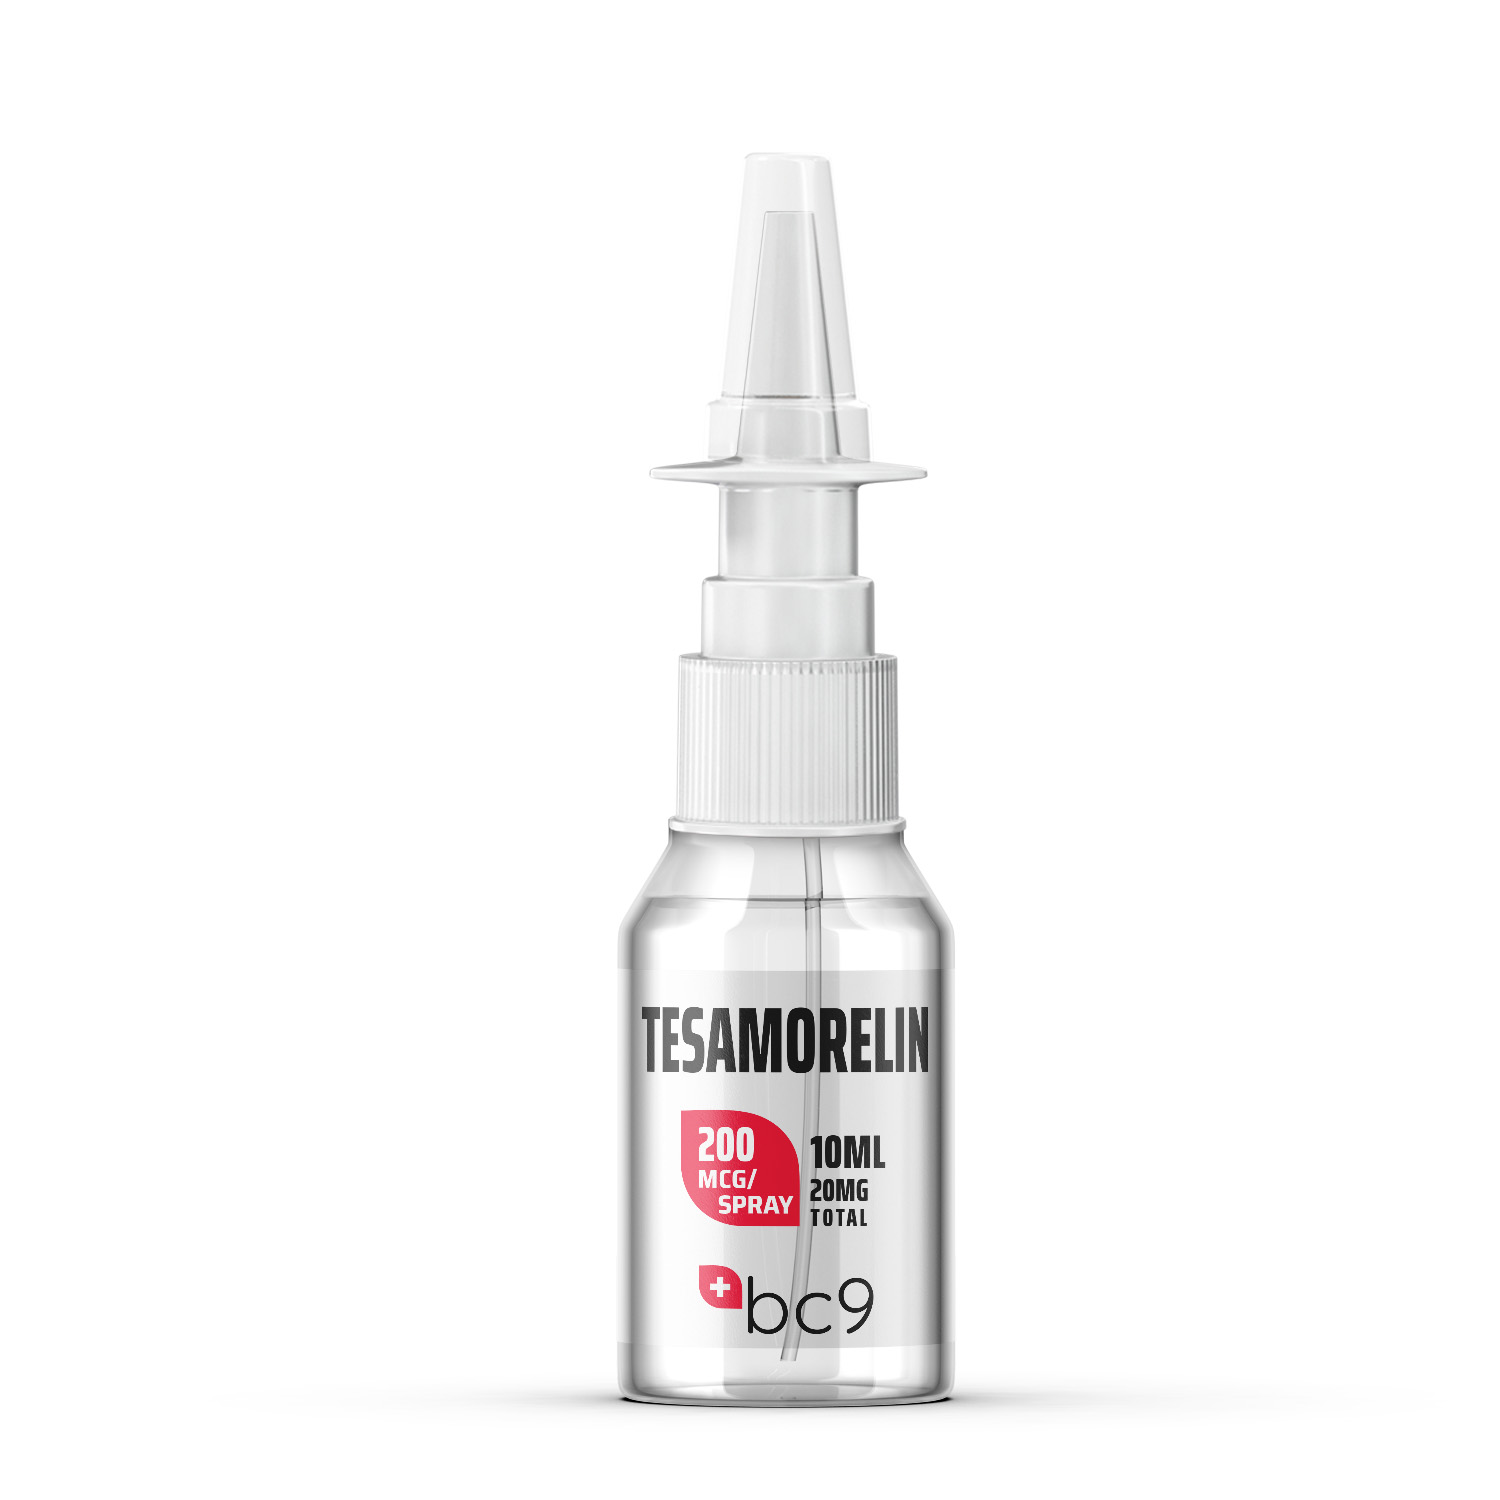 Buy Tesamorelin Nasal Spray For Sale in USA | BC9.org